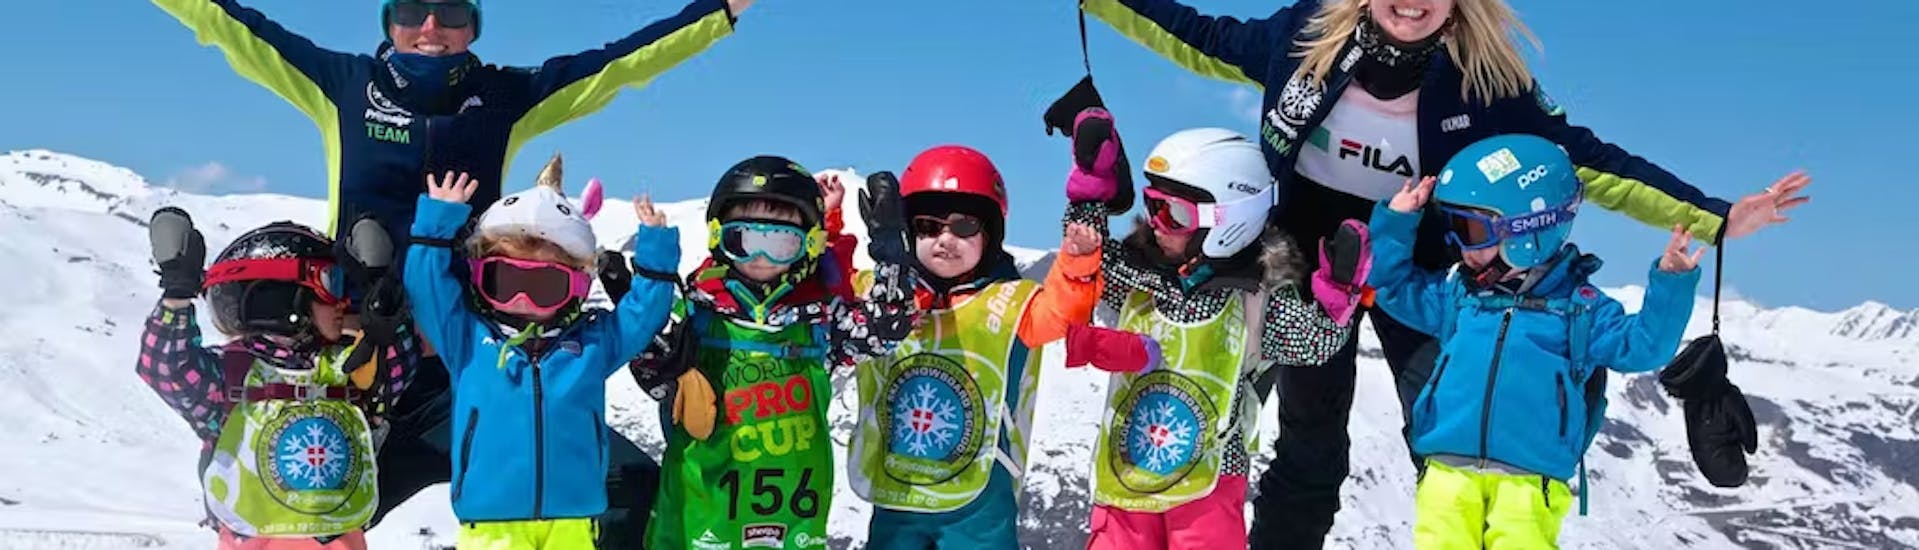 Lezioni di sci per bambini principianti (5-13 anni) - Max. 4 per gruppo.